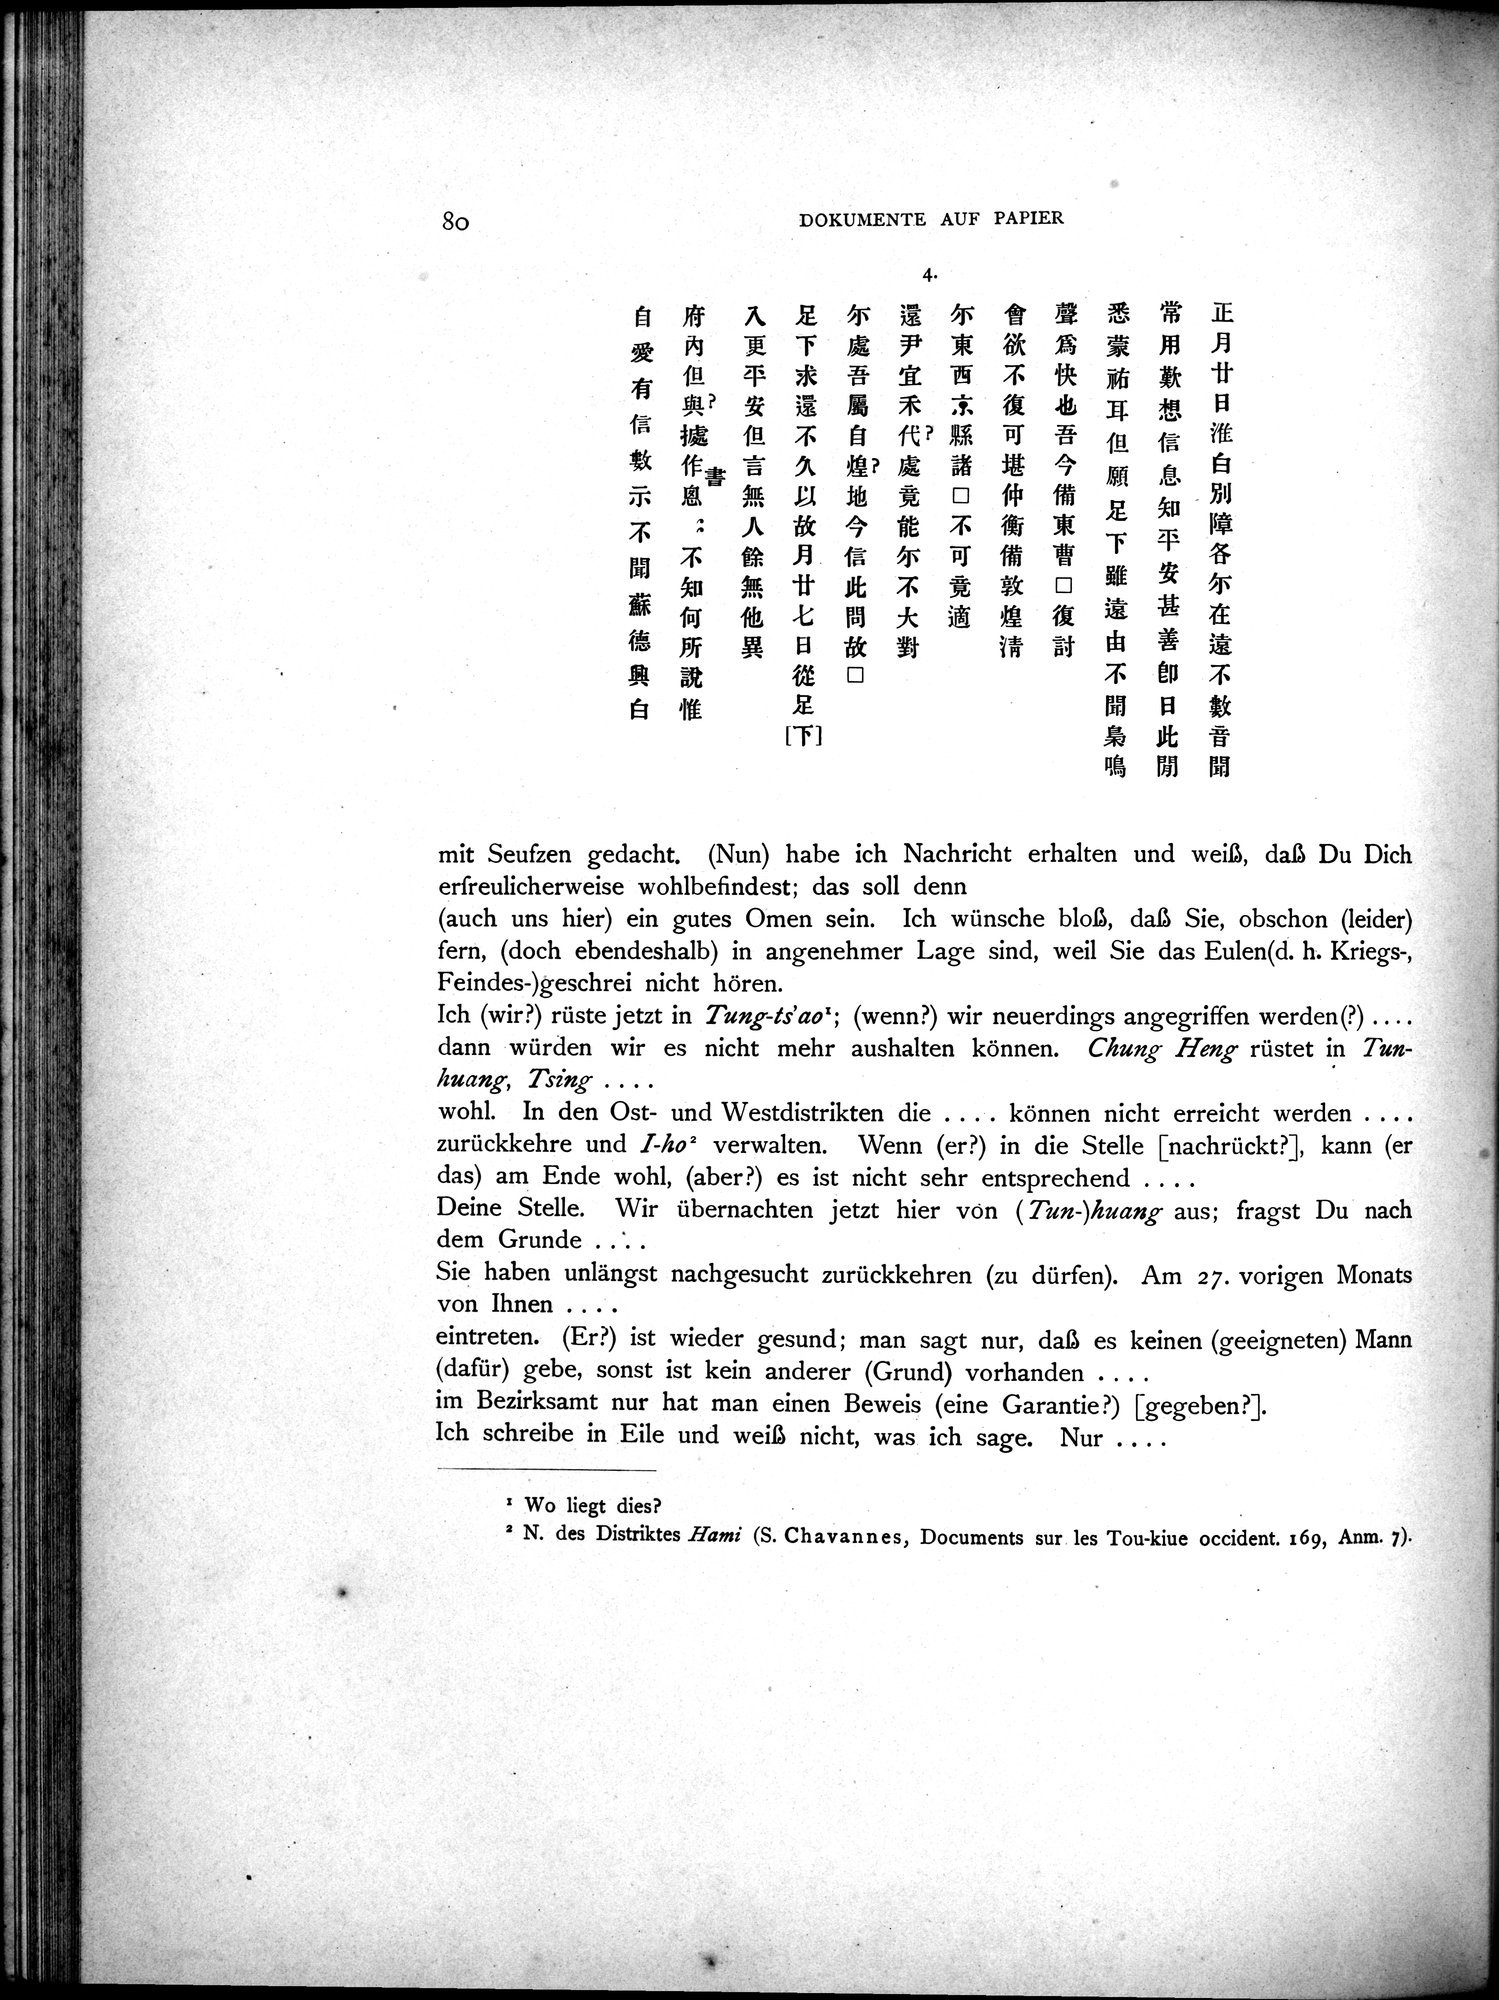 Die Chinesischen Handschriften- und sonstigen Kleinfunde Sven Hedins in Lou-lan : vol.1 / Page 104 (Grayscale High Resolution Image)